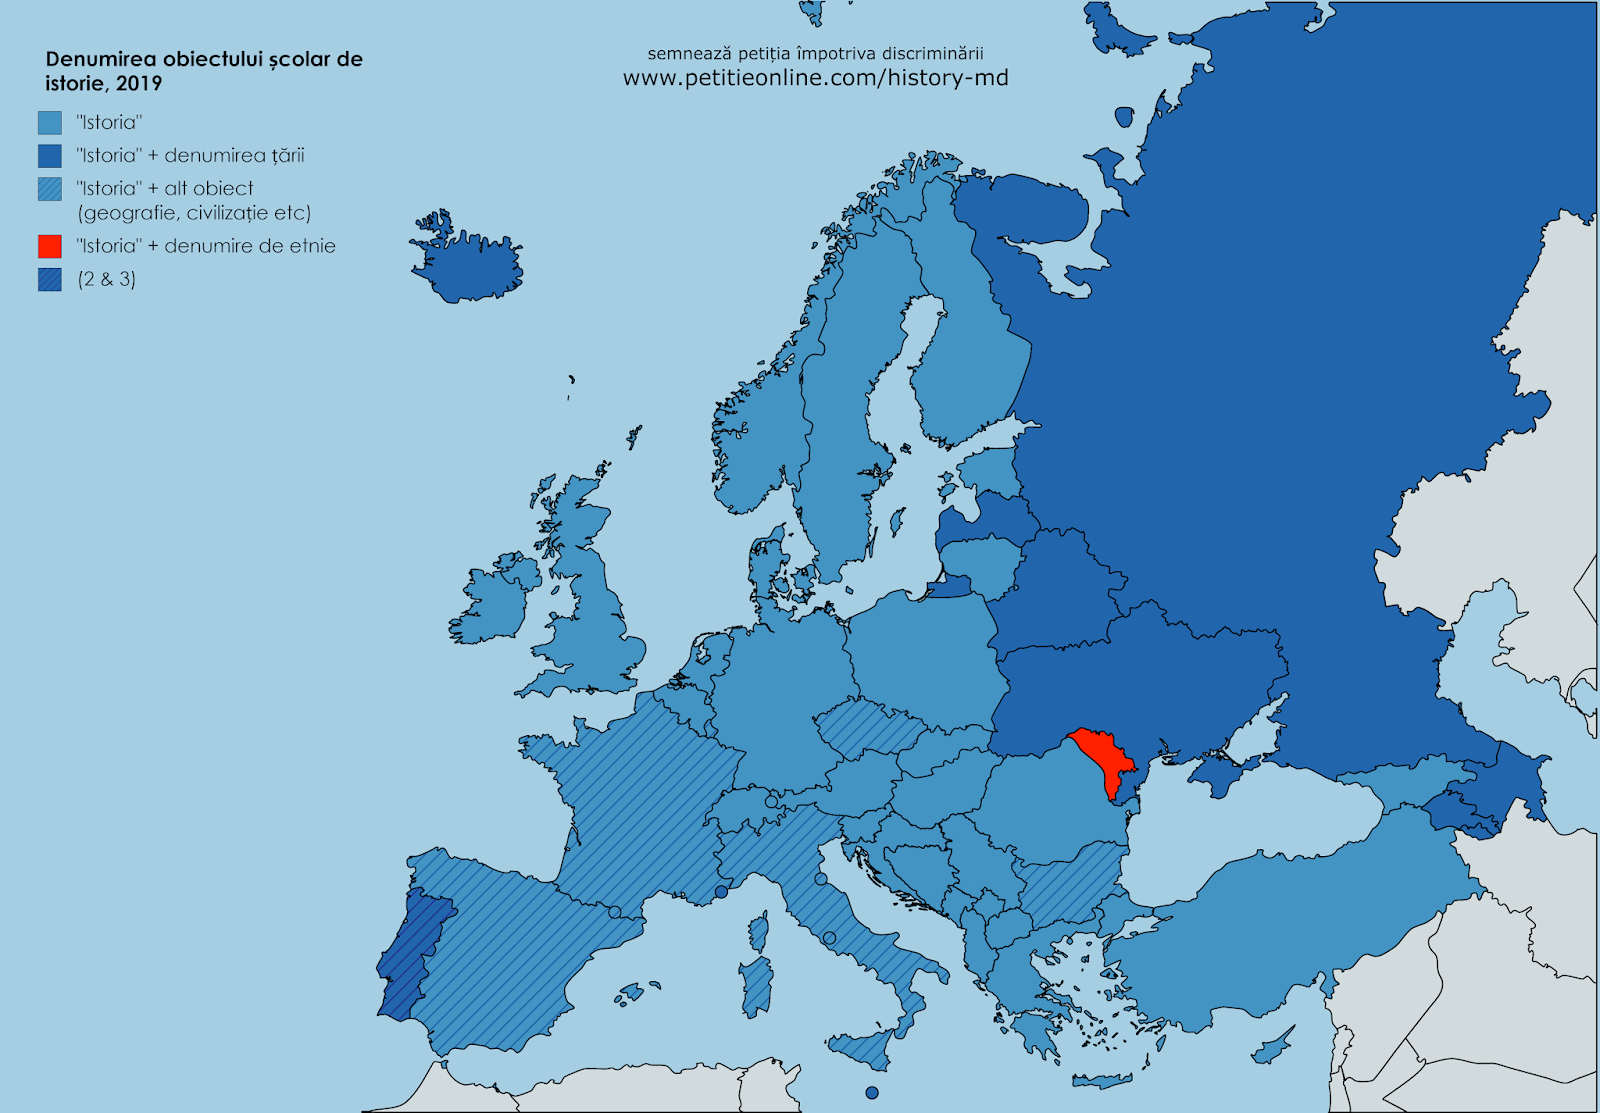 Harta denumirii obiectului școlar de istorie în tarile Europei